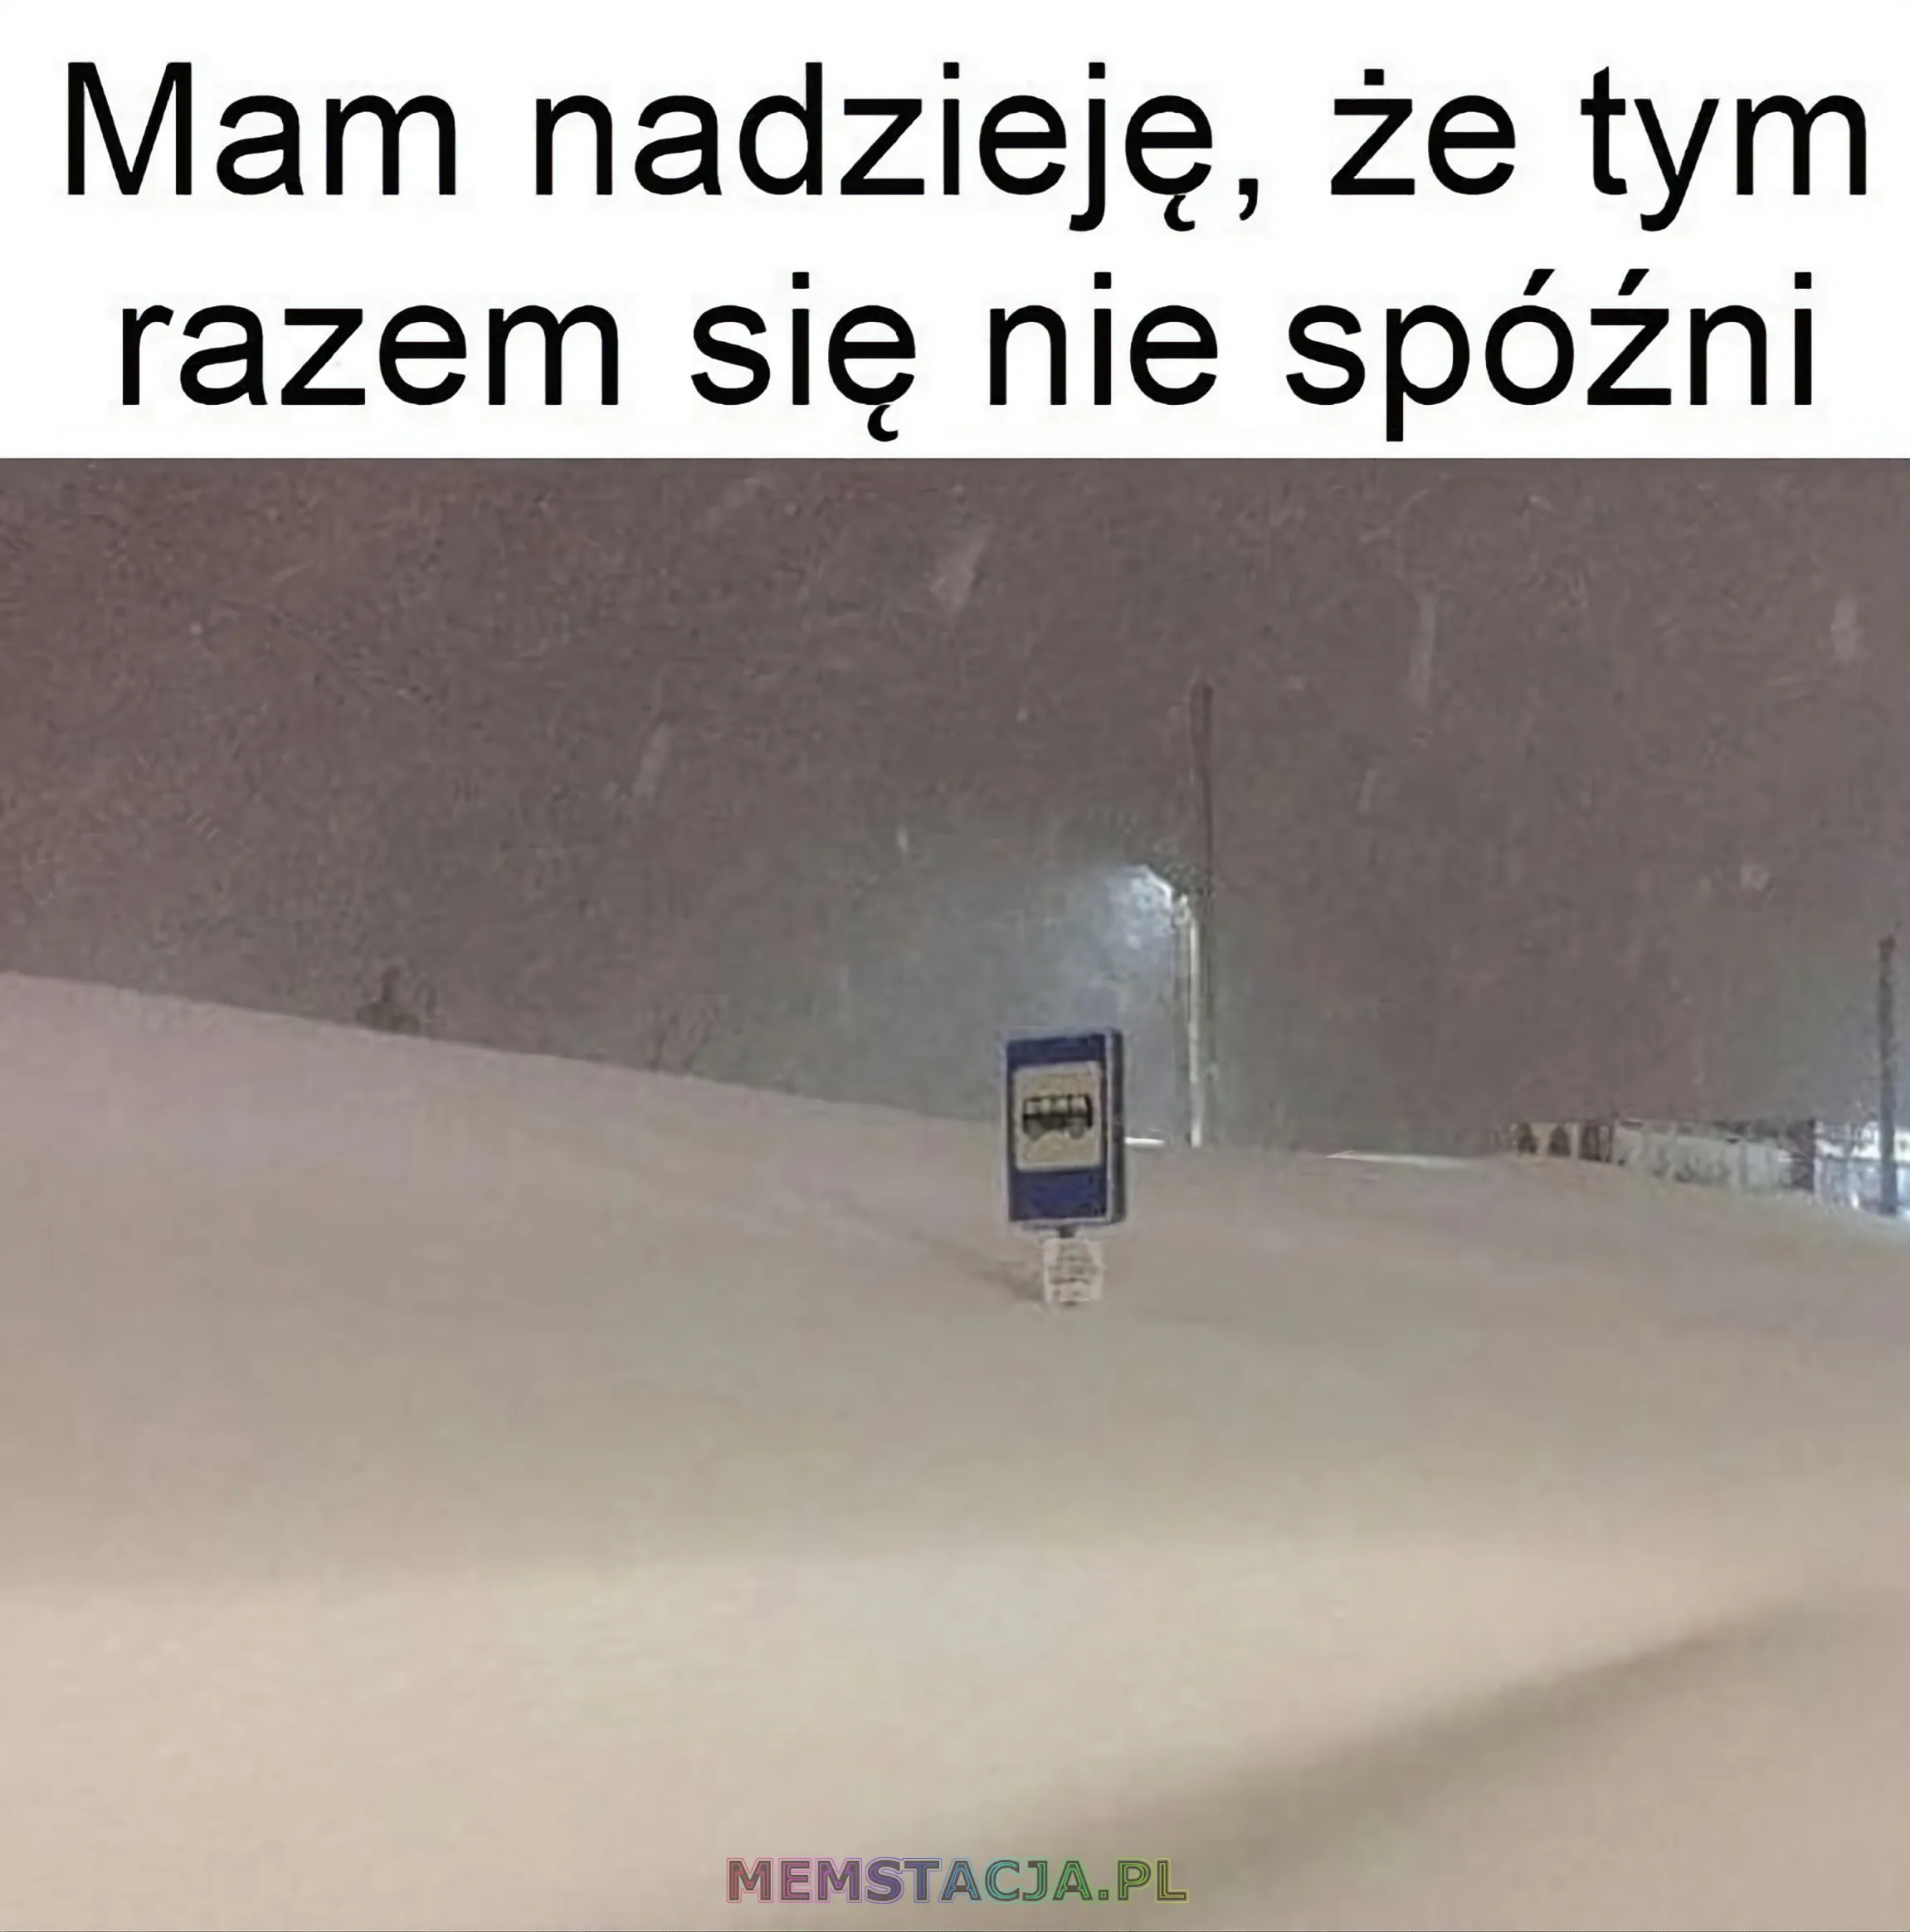 Mem przedstawiający przystanek autobusowy zasypany przez śnieg: 'Mam nadzieję, że tym razem się nie spóźni.'